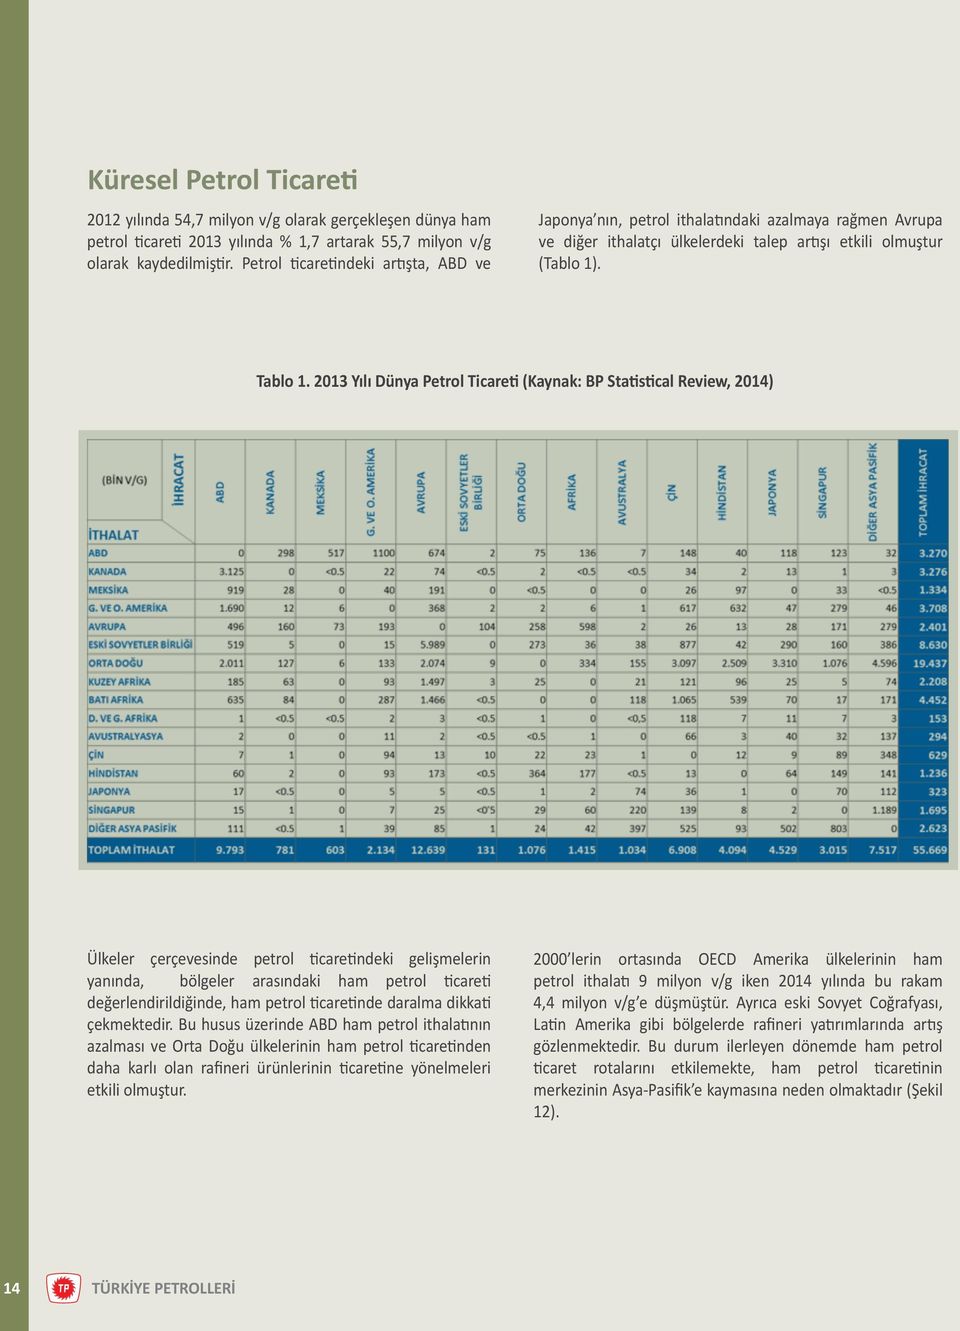 2013 Yılı Dünya Petrol Ticareti (Kaynak: BP Statistical Review, 2014) Ülkeler çerçevesinde petrol ticaretindeki gelişmelerin yanında, bölgeler arasındaki ham petrol ticareti değerlendirildiğinde, ham